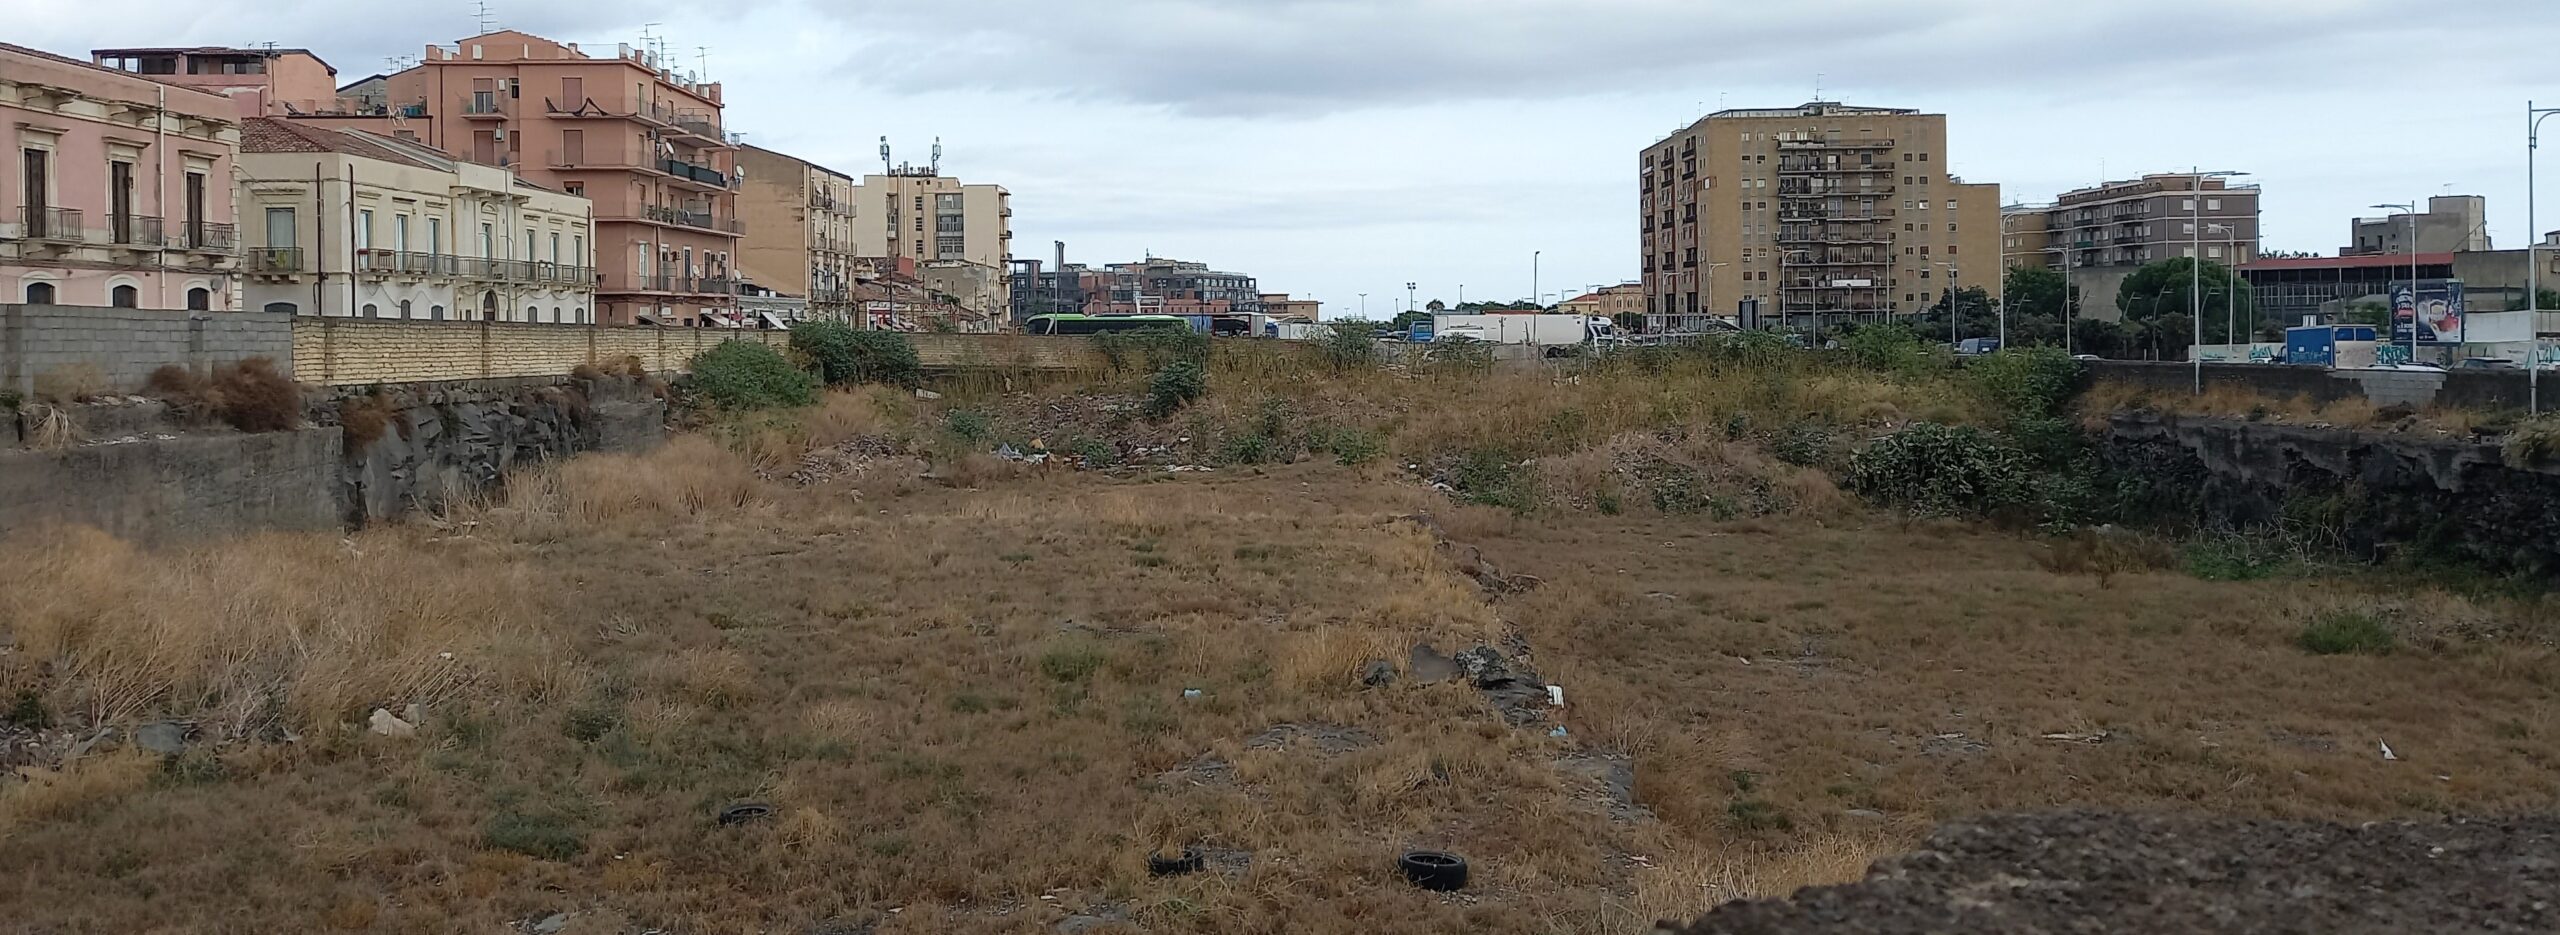 parco martiri della liberta 1mqdb verde urbano radici intercedono catania visionaria 5